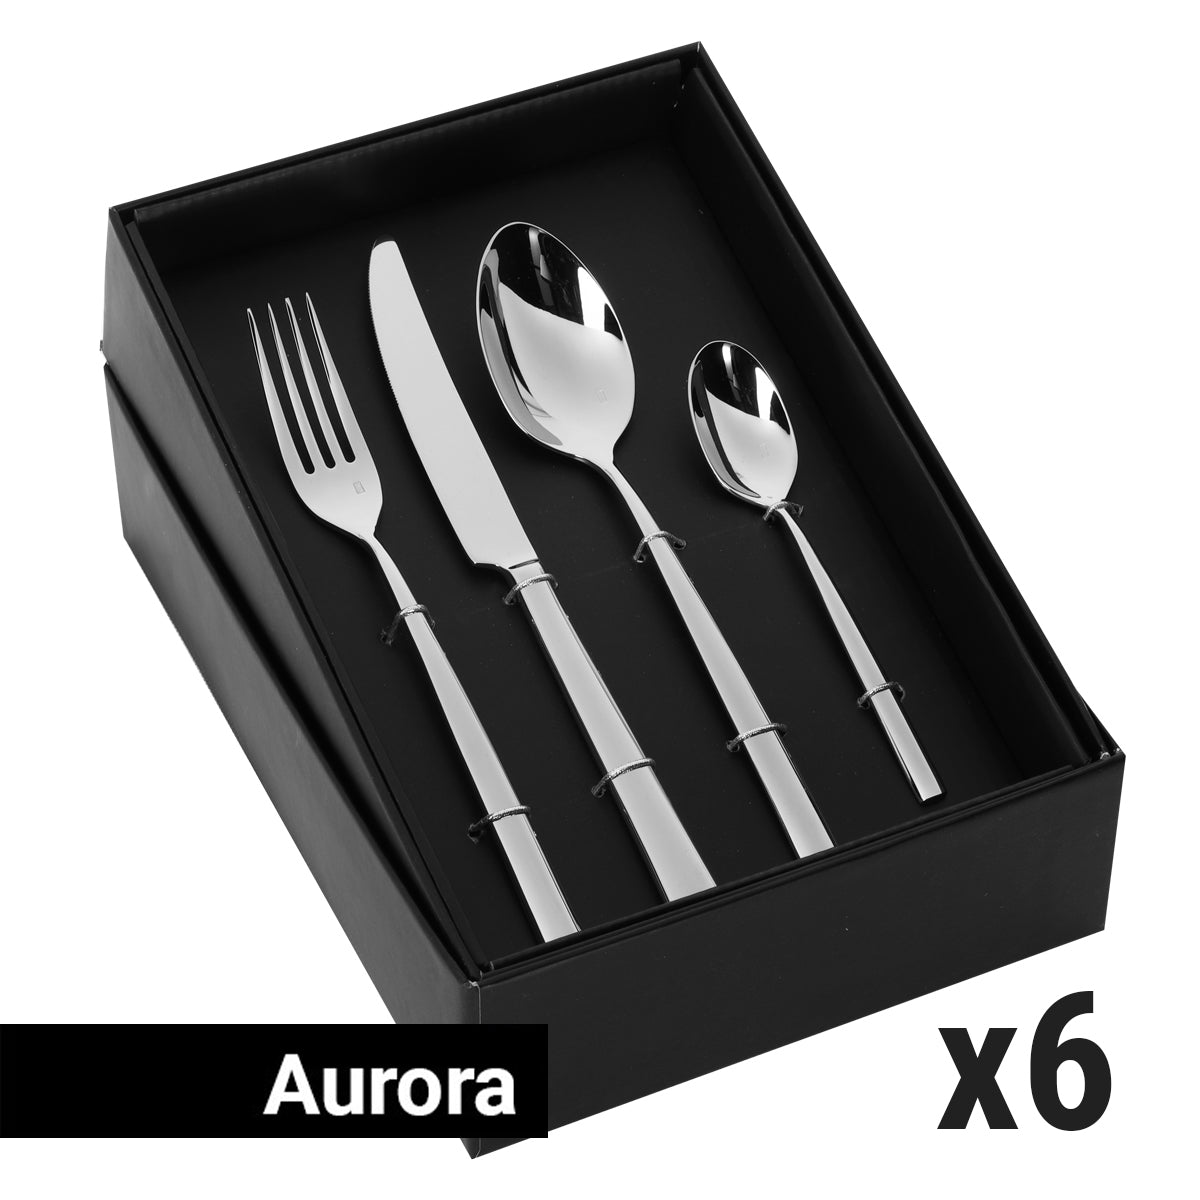 Bestikksett Aurora - 24 deler - For 6 personer